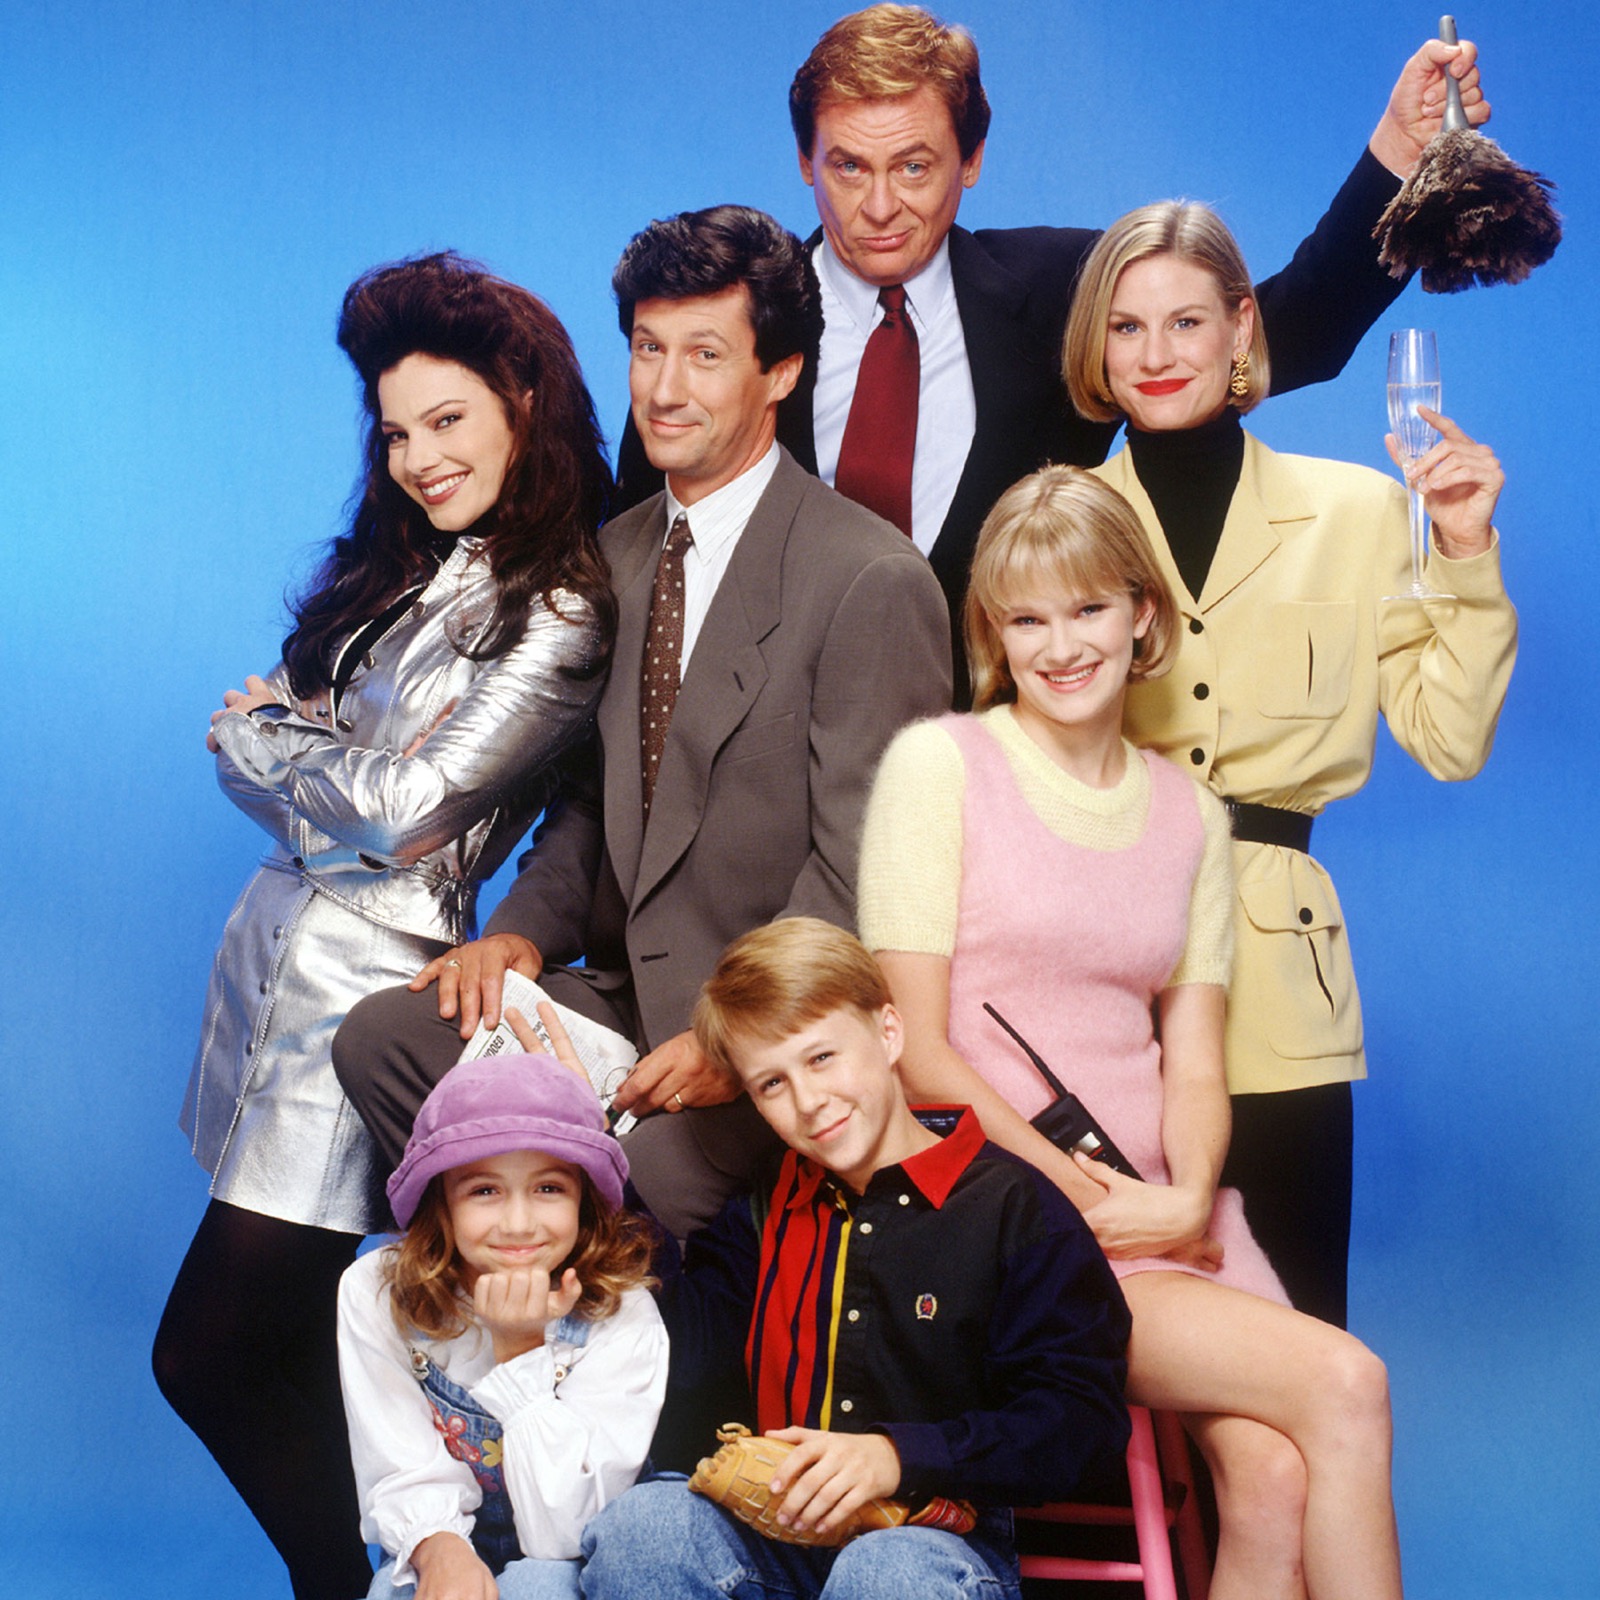 La serie comenzó a emitirse en 1993 y fue producida por Fran Descher y su esposo. (TriStar Television)